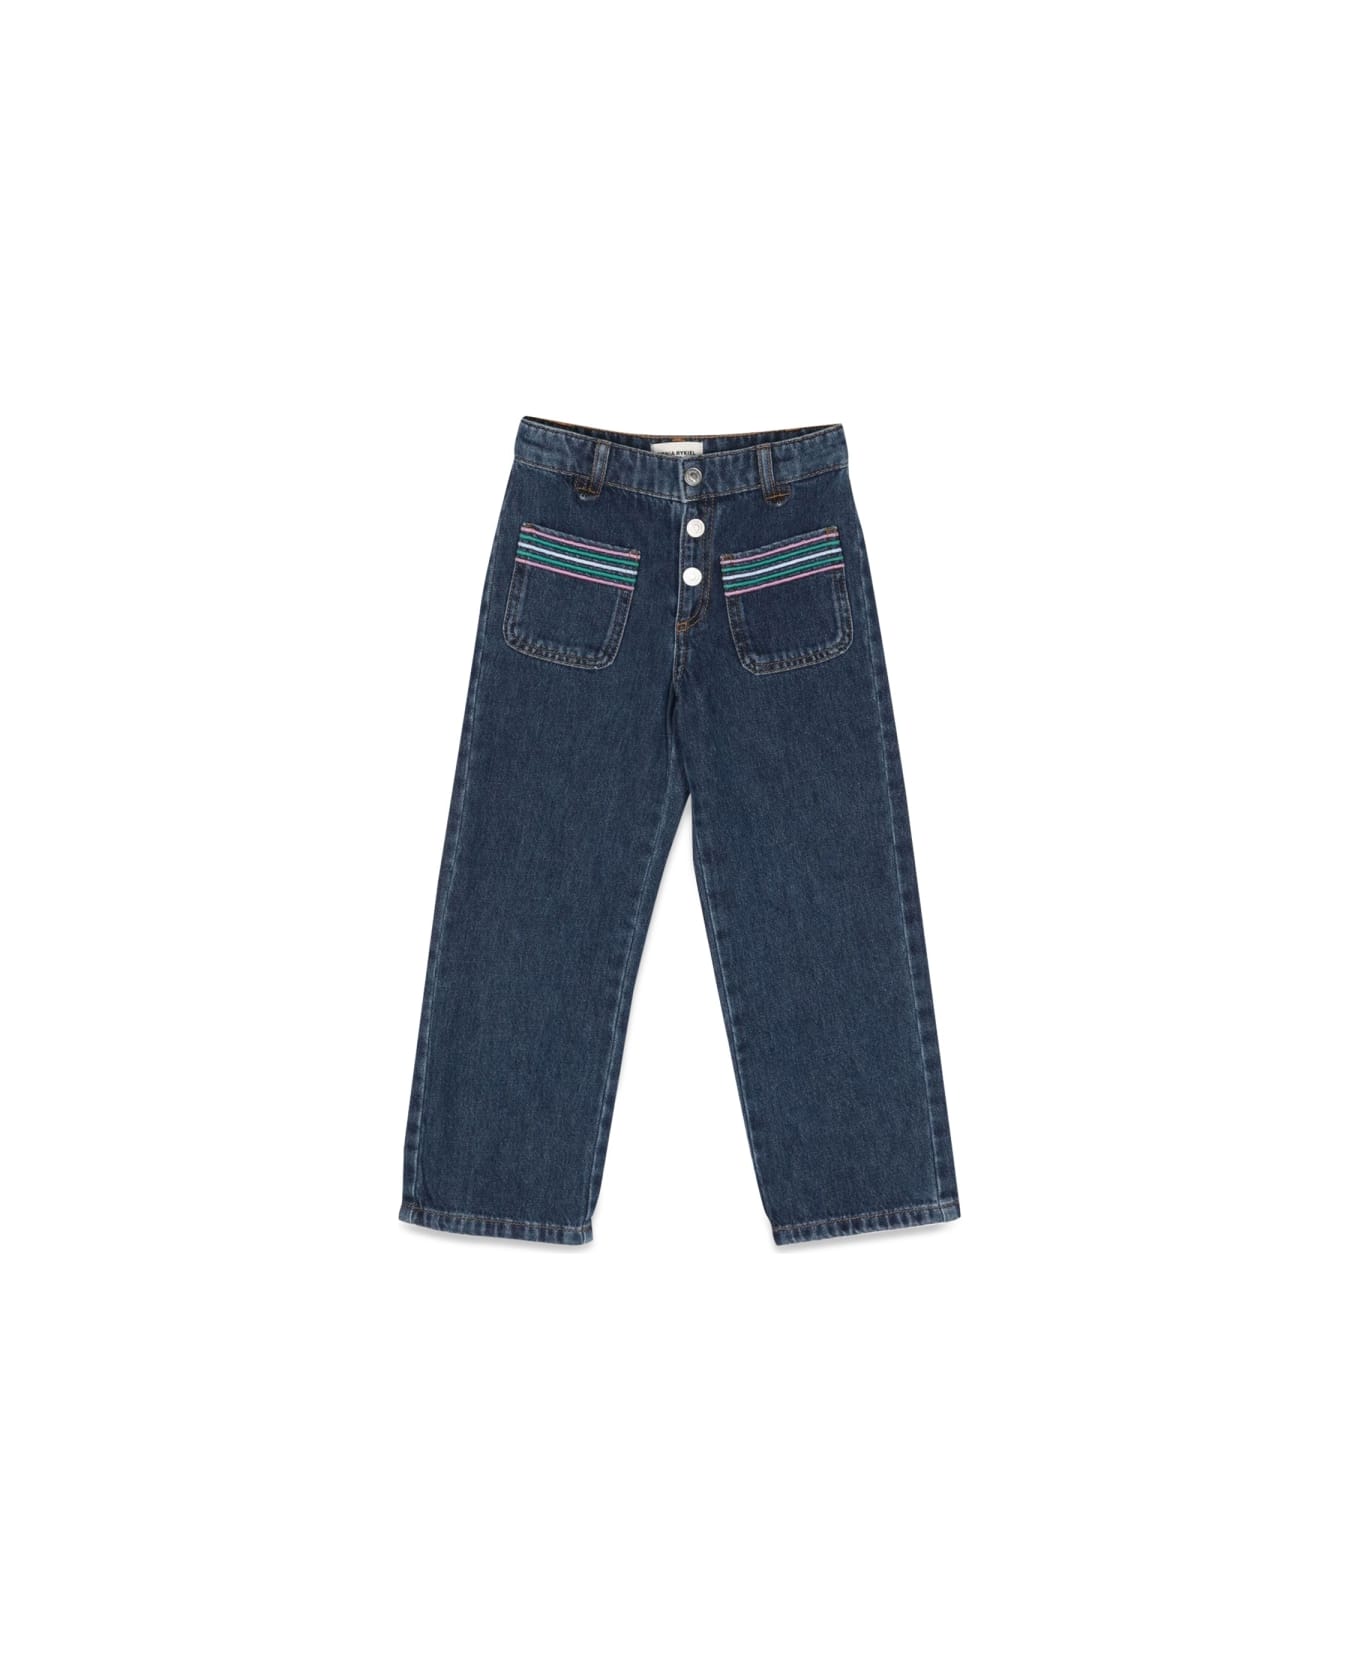 Sonia Rykiel Jeans With Pockets - DENIM